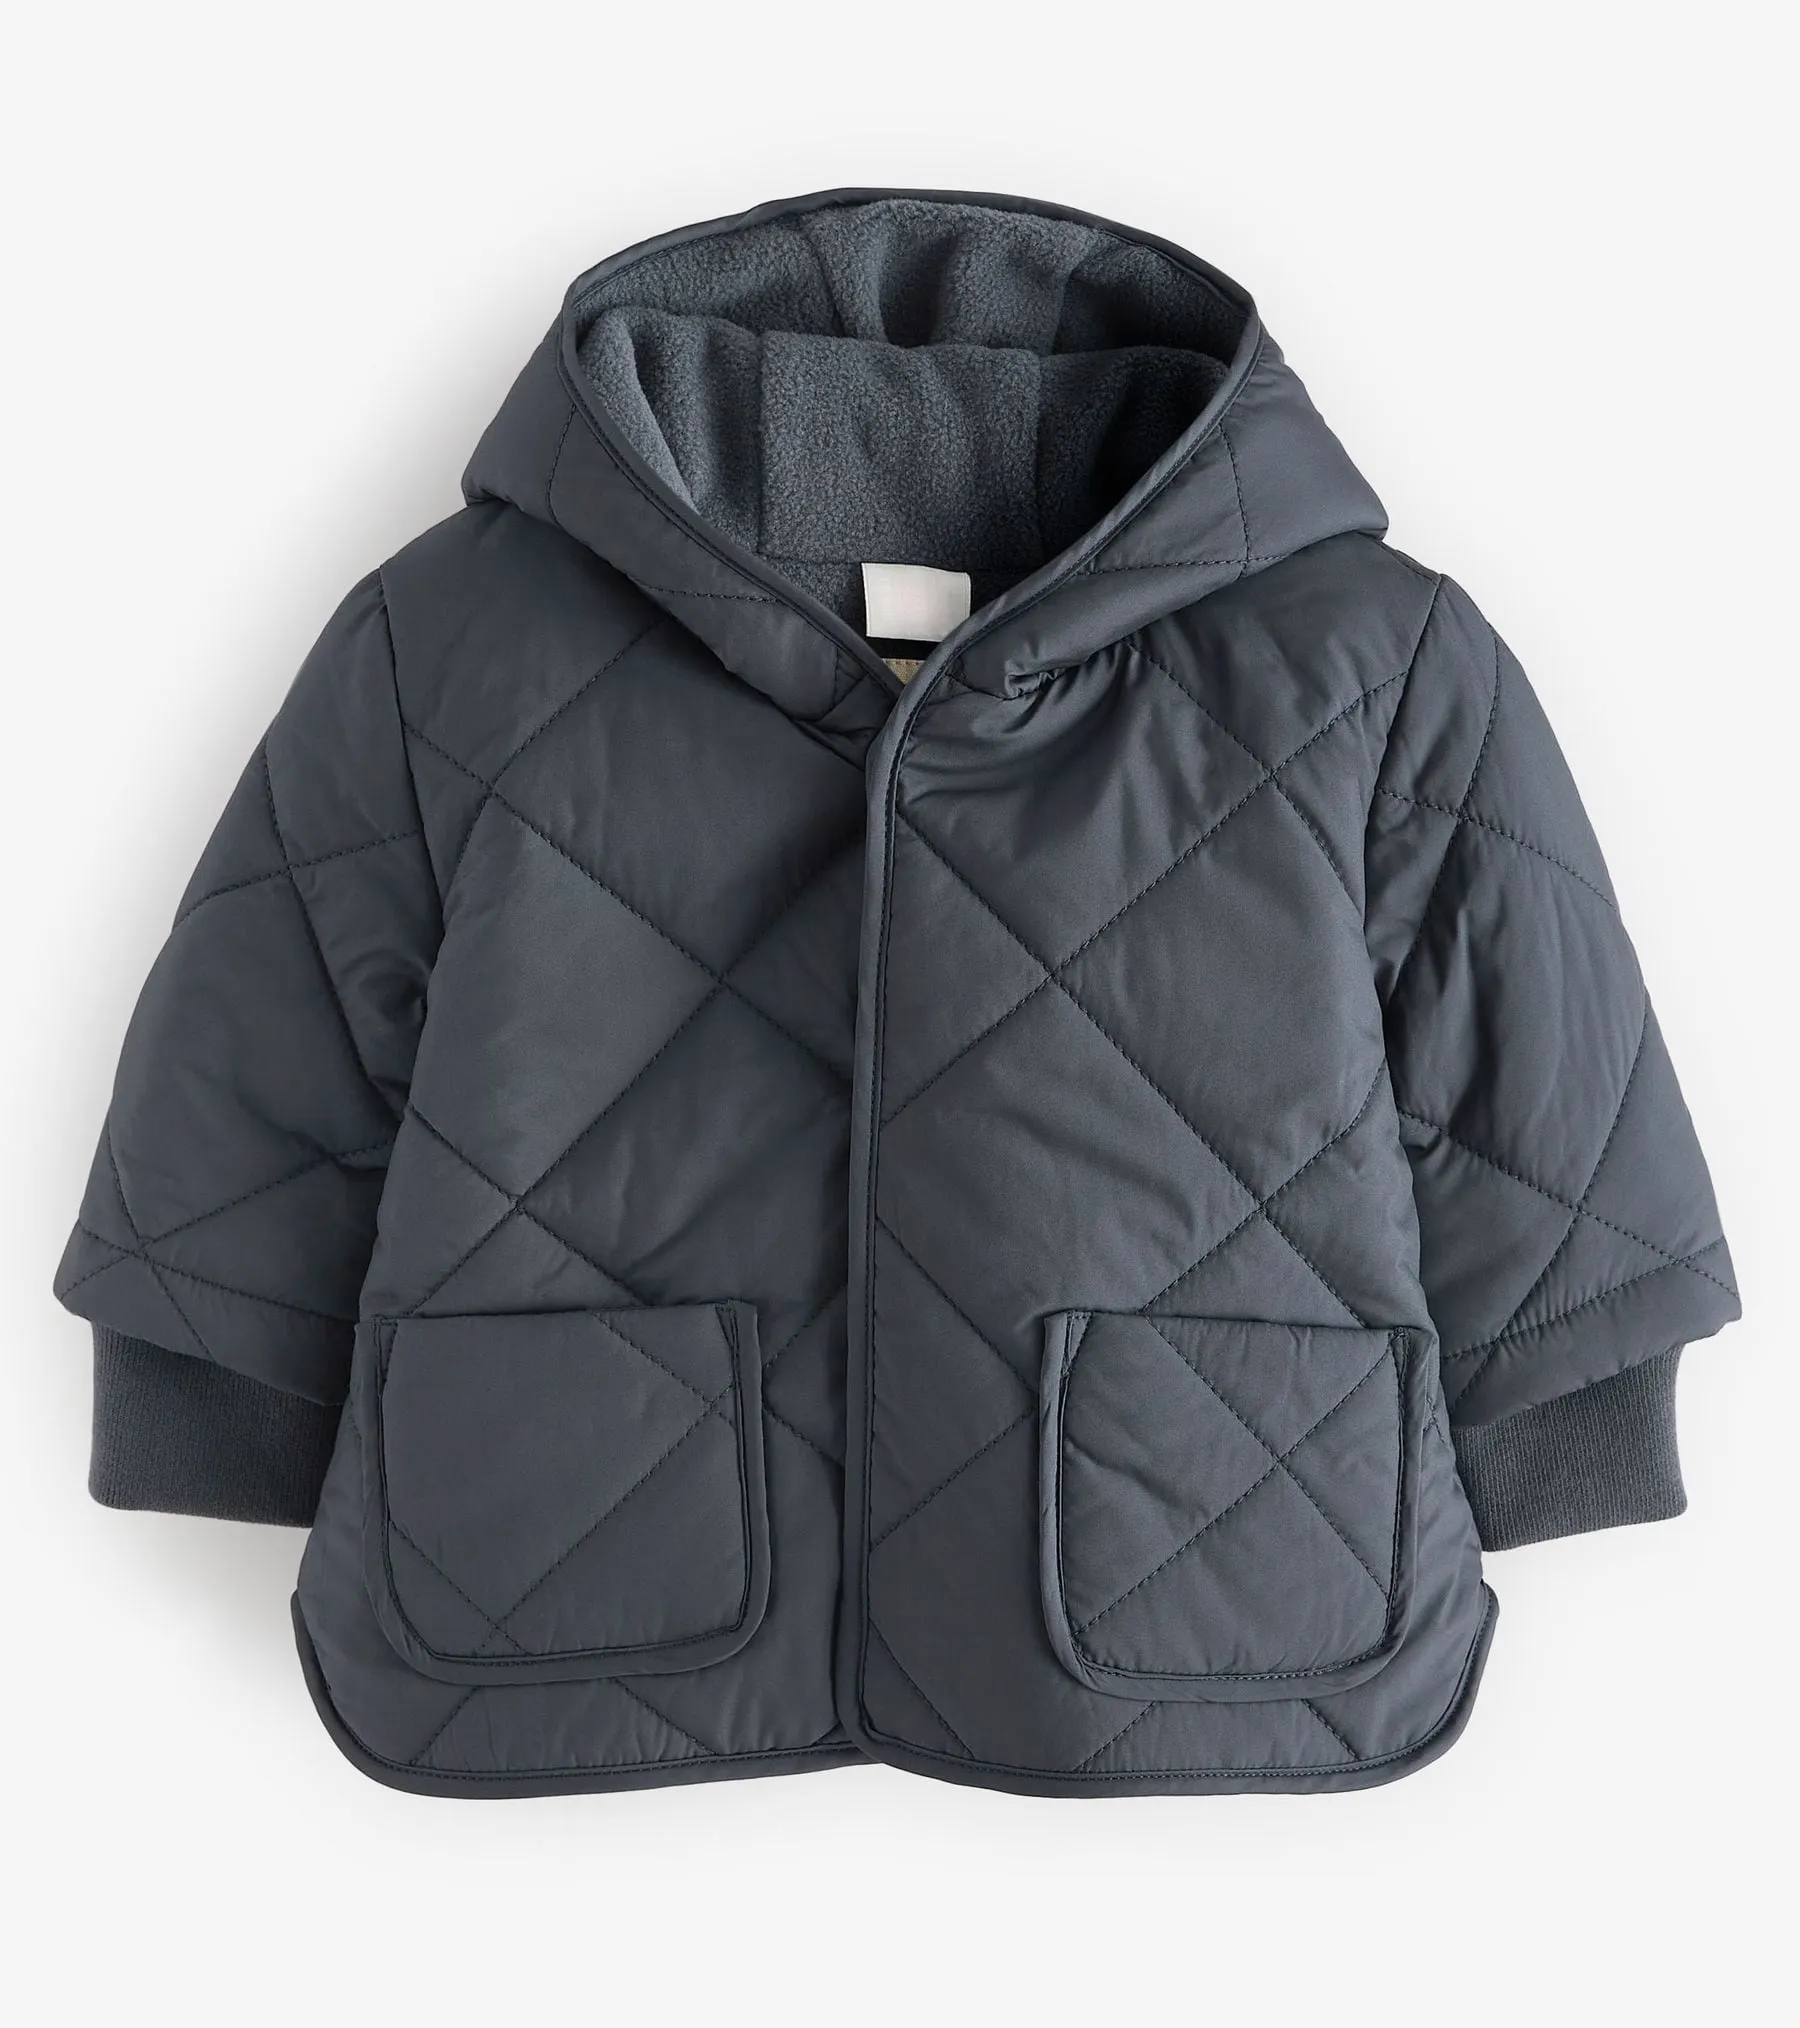 थोक पफर जैकेट प्यूफर कस्टम बच्चे सर्दियों के बाहरी कपड़े/बच्चे की लड़की शीतकालीन कोट सादे जैकेट